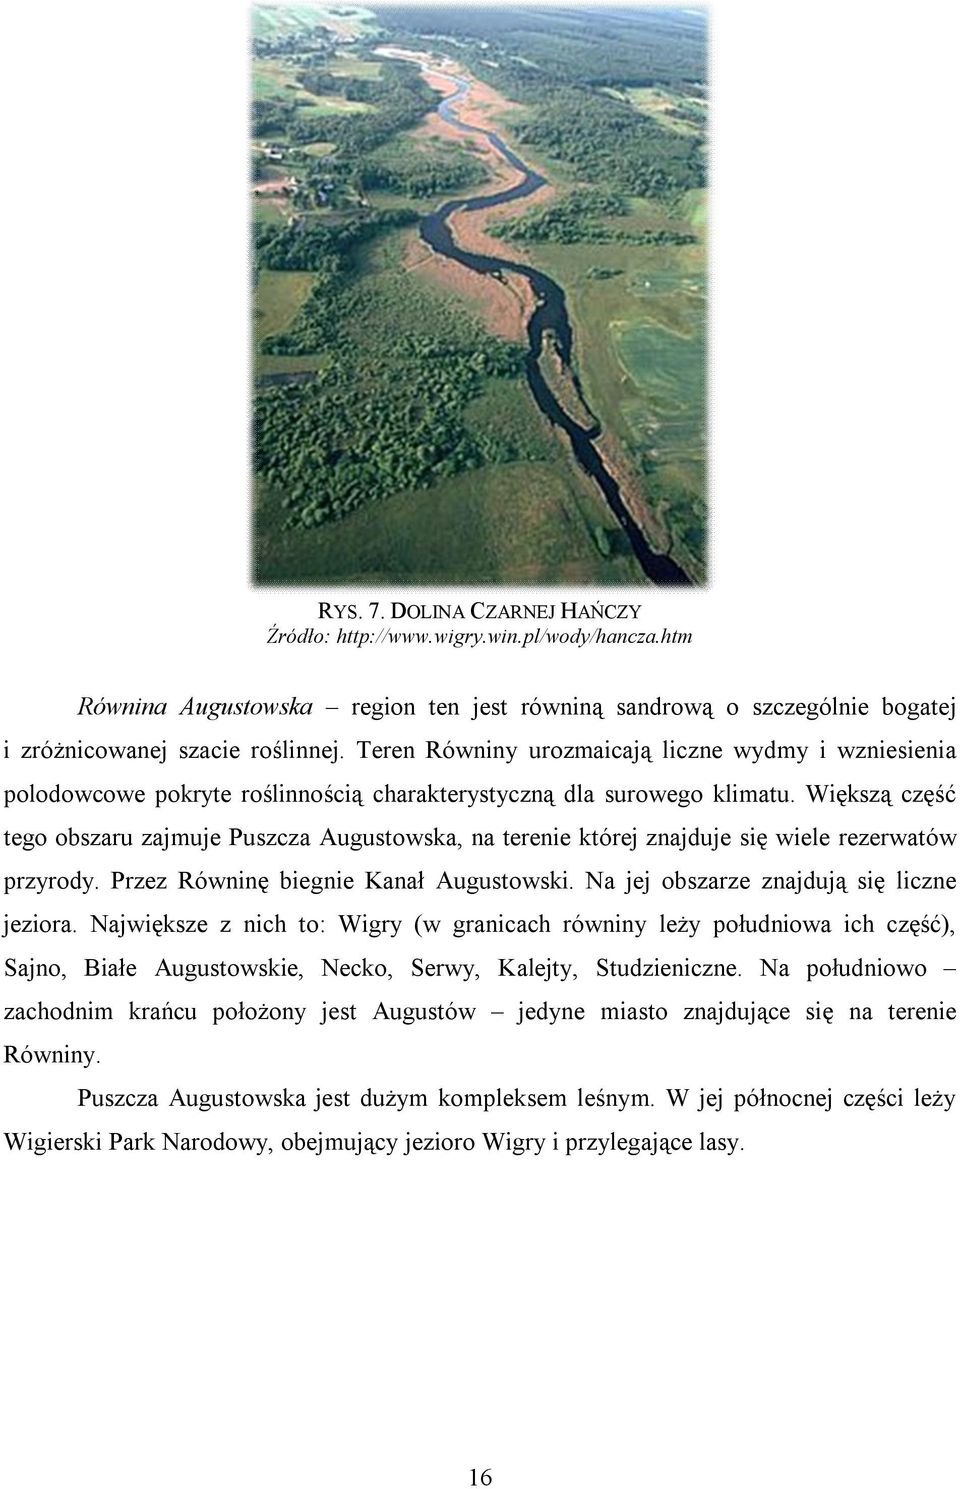 Większą część tego obszaru zajmuje Puszcza Augustowska, na terenie której znajduje się wiele rezerwatów przyrody. Przez Równinę biegnie Kanał Augustowski. Na jej obszarze znajdują się liczne jeziora.